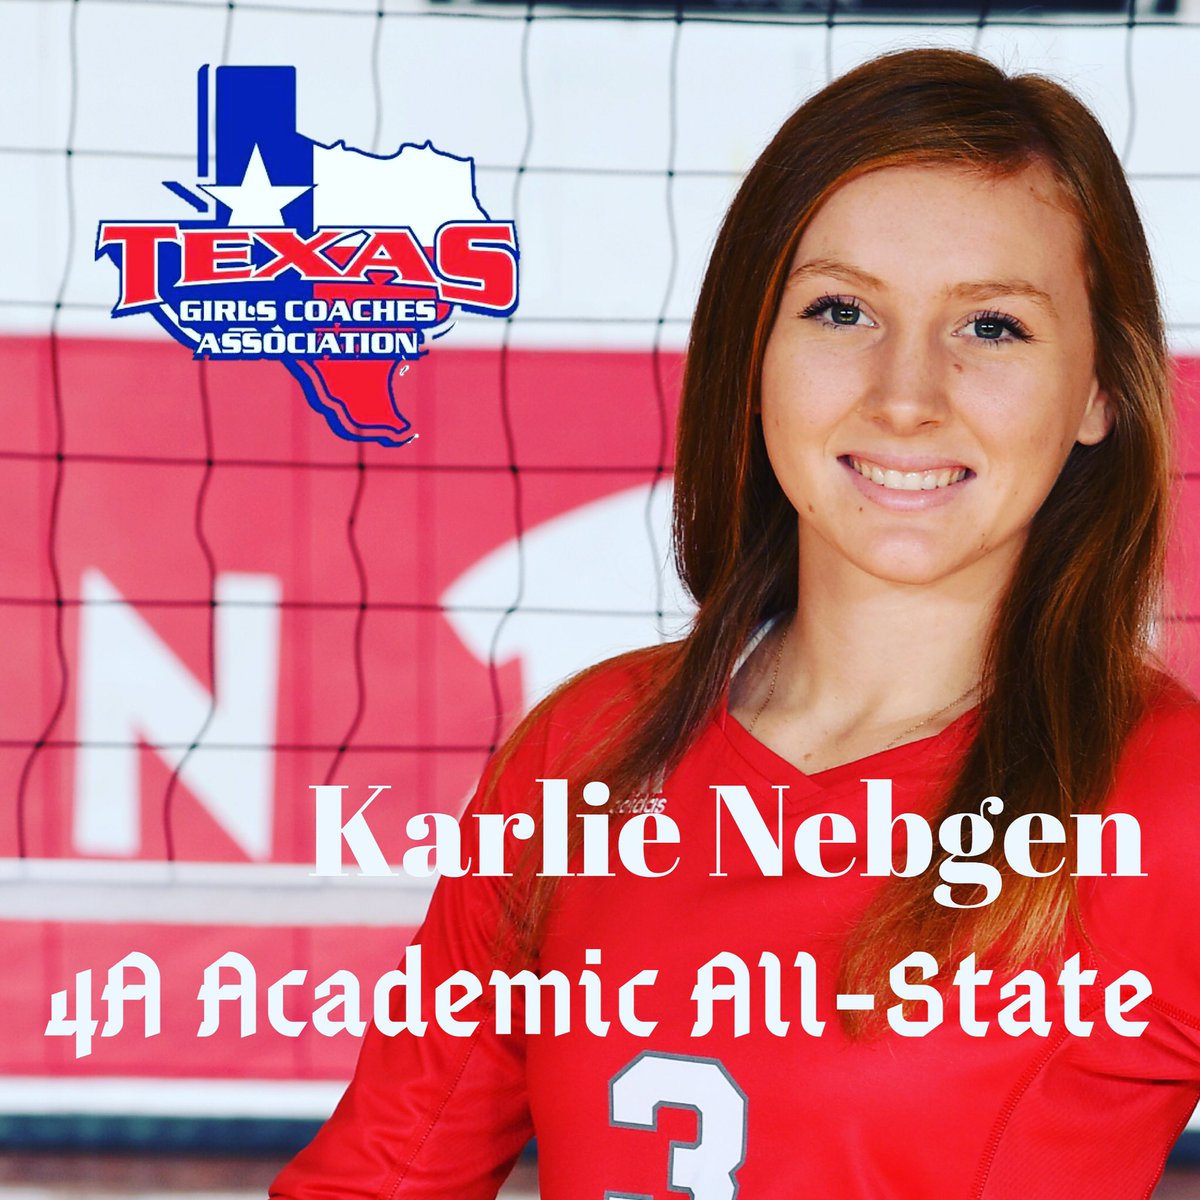 Congratulations to Sr. Karlie Nebgen!  Texas Girls Coaches Association 4A Academic All-State! #GoodStudent #GoodTeachers #BilliePride